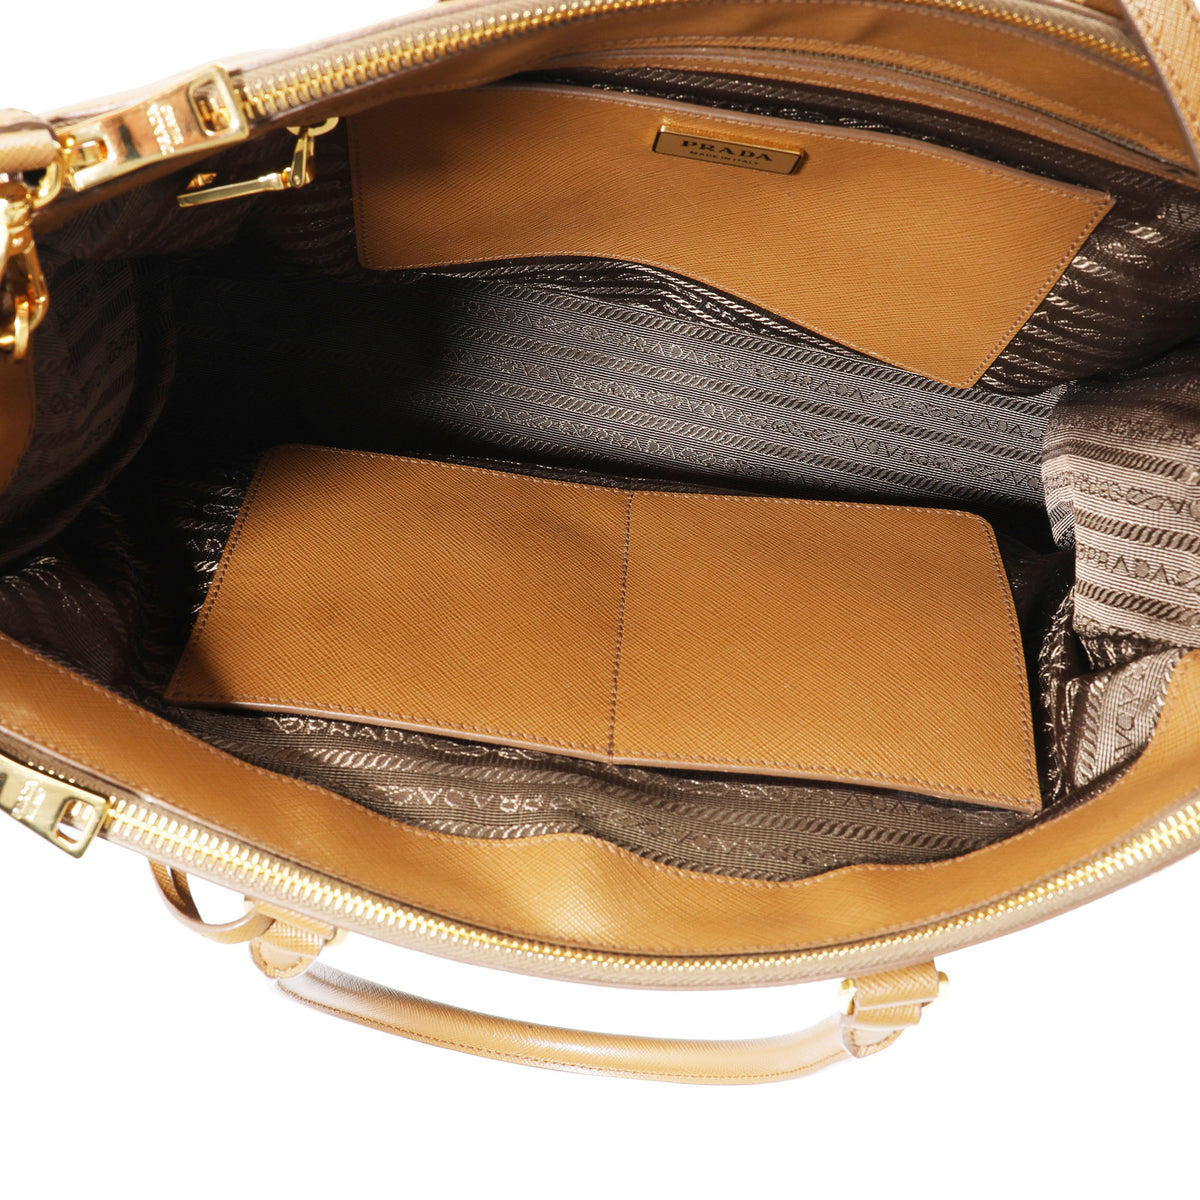 Prada Saffiano Galleria Bag Small Cerise in Saffiano Leather with